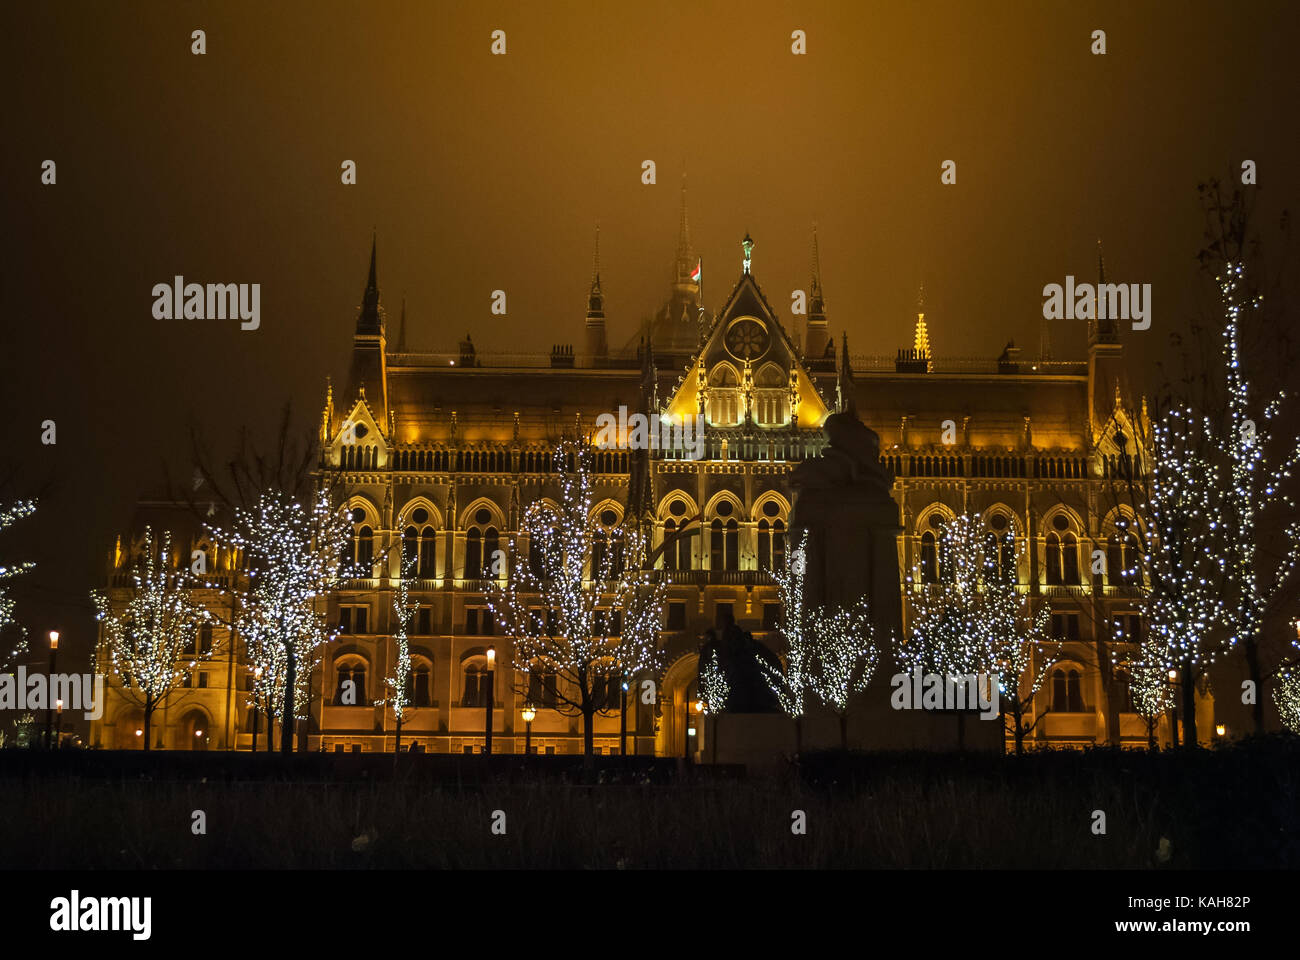 Ungarischen Parlament in Budapest, Nacht Foto Stockfoto